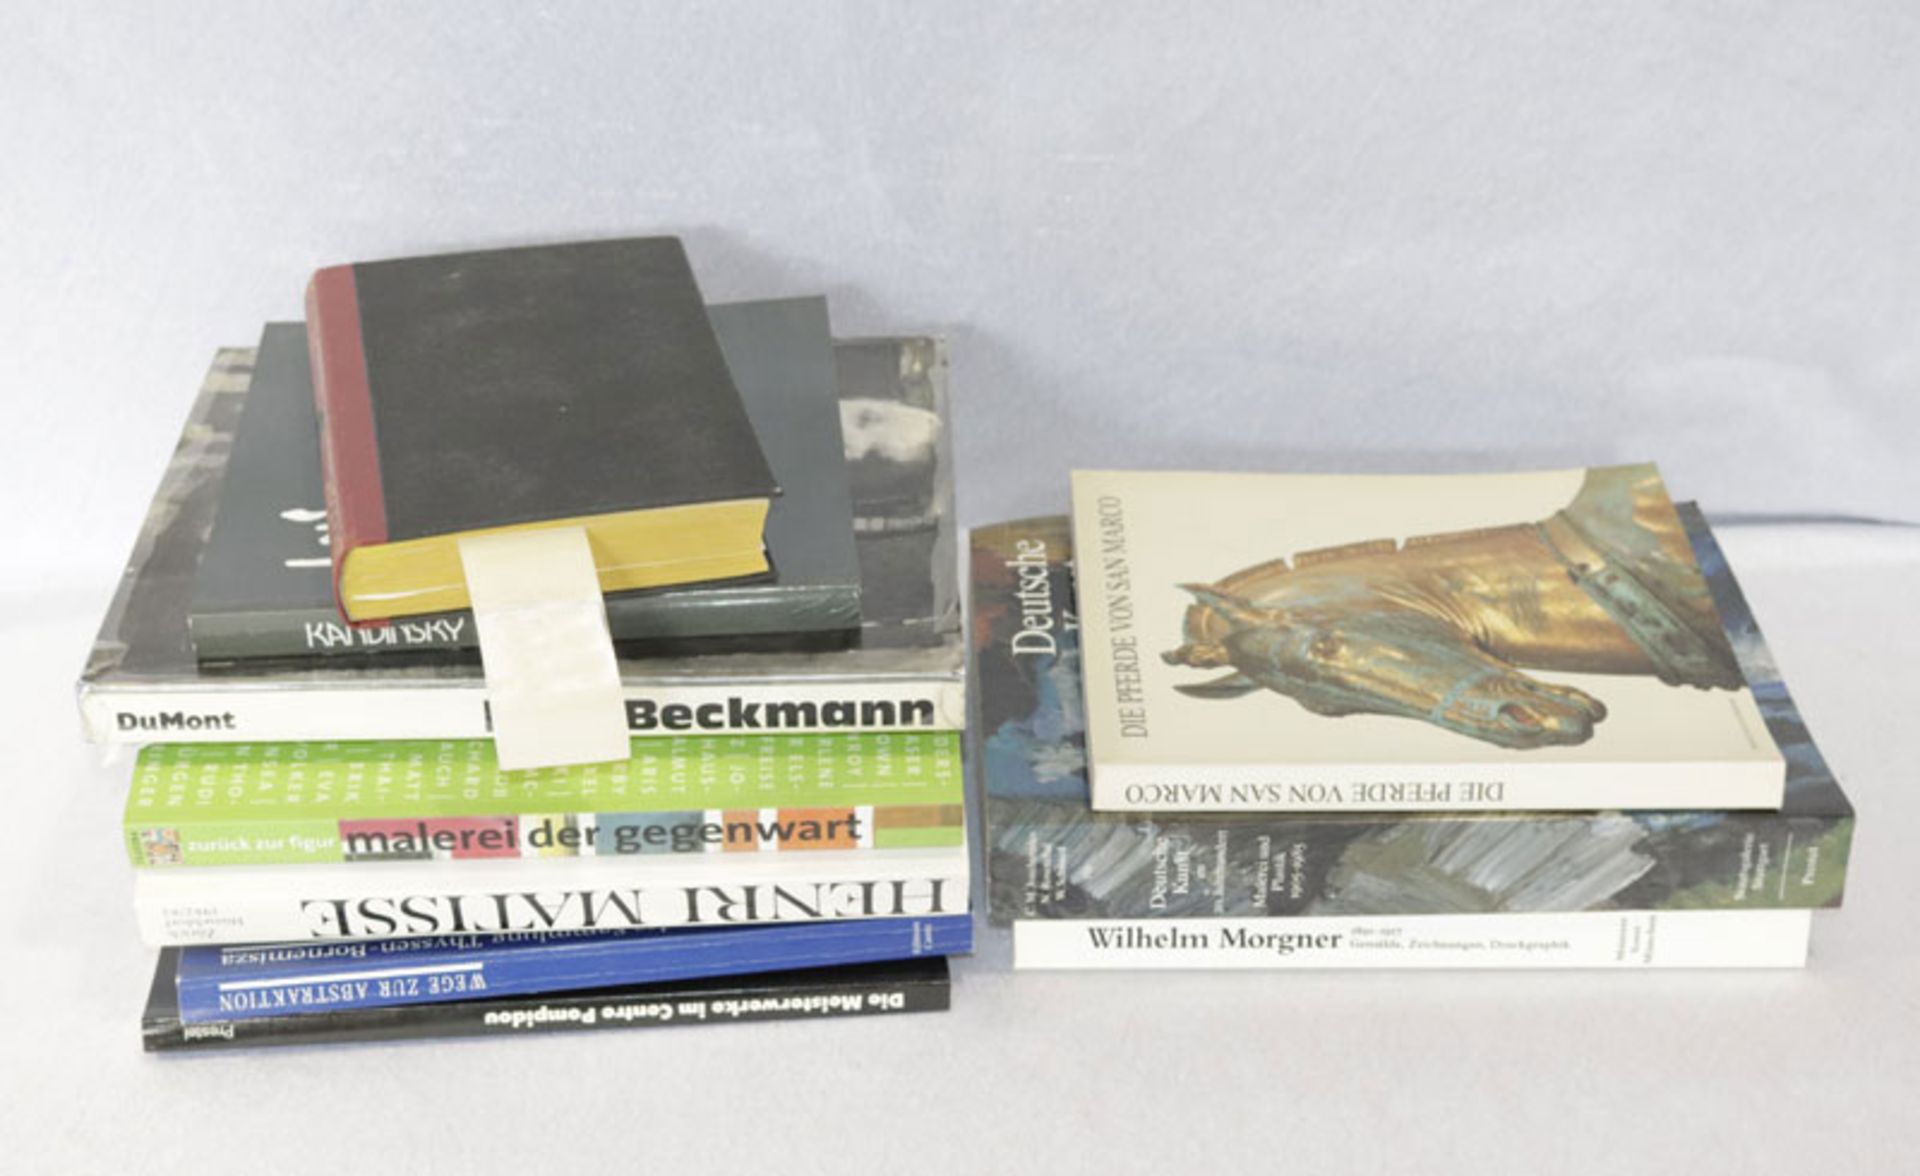 Bücher-Konvolut von diversen Kunstbüchern, u. a. Max Beckmann, Henri Matisse, Wilhelm Morgner,